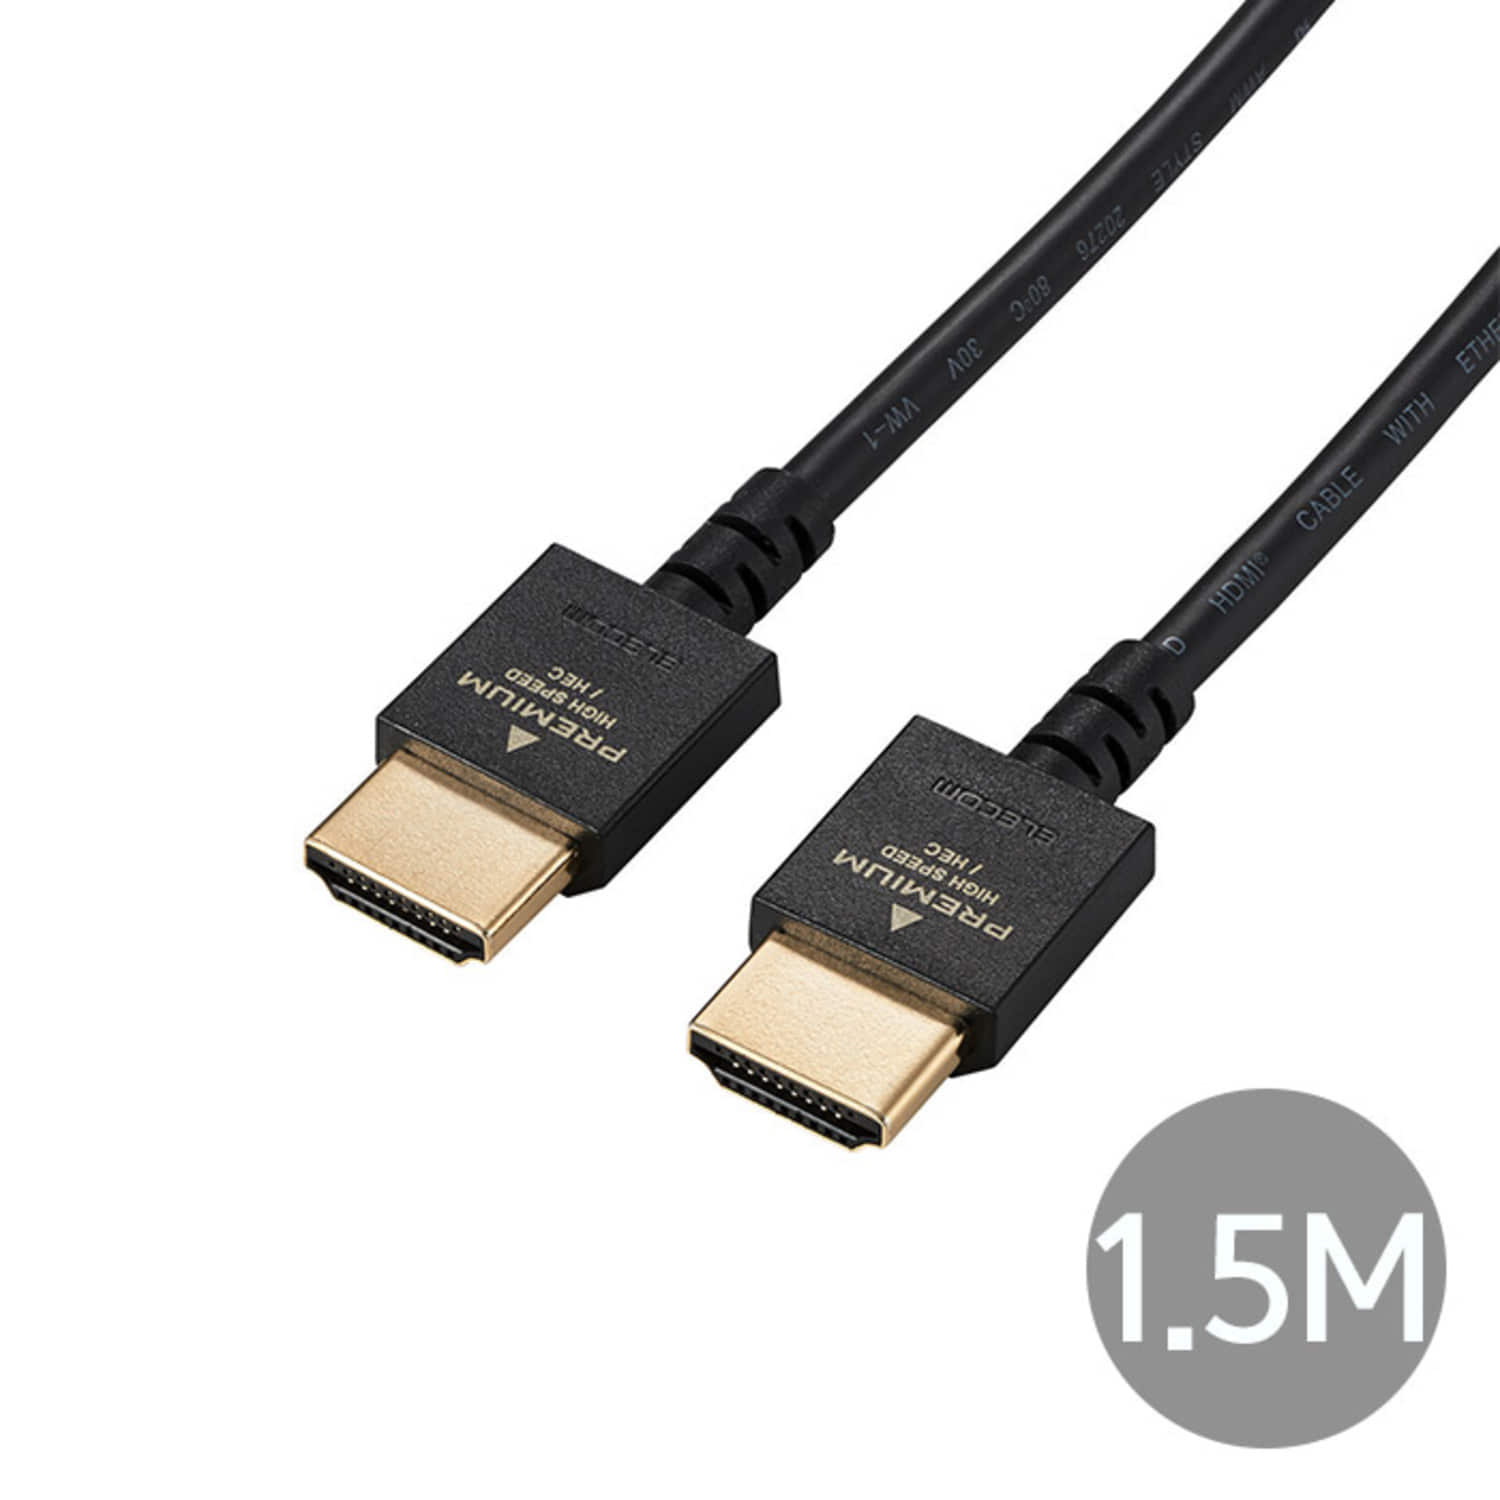 4K지원 프리미엄 HDMI 슬림 케이블 1.5m DH-HDP14ES15BK